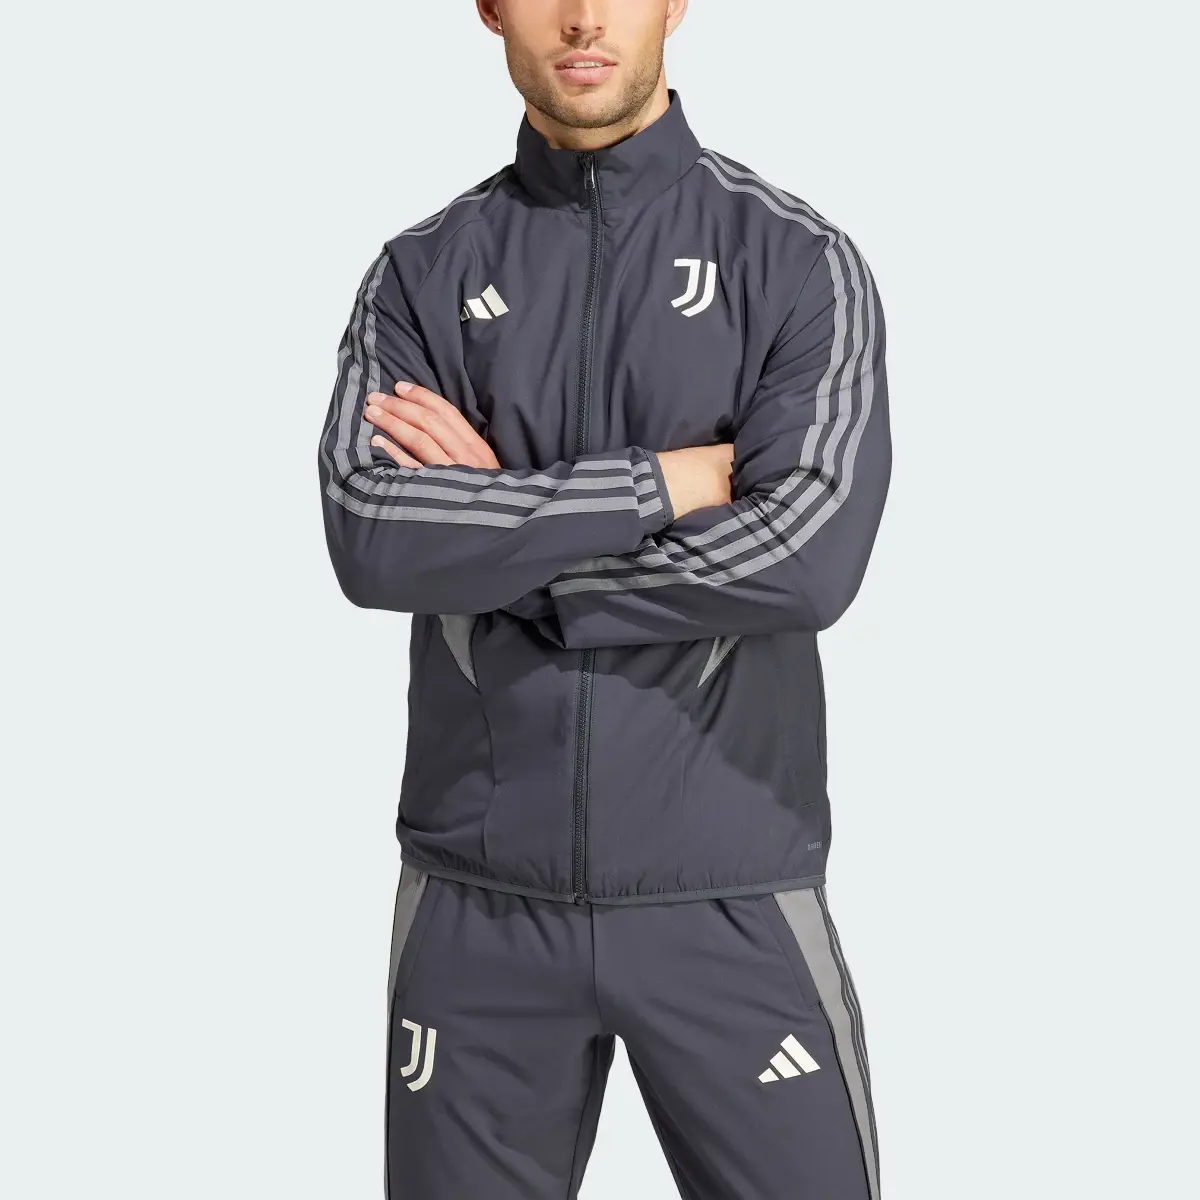 Adidas Giacca Anthem Juventus. 1